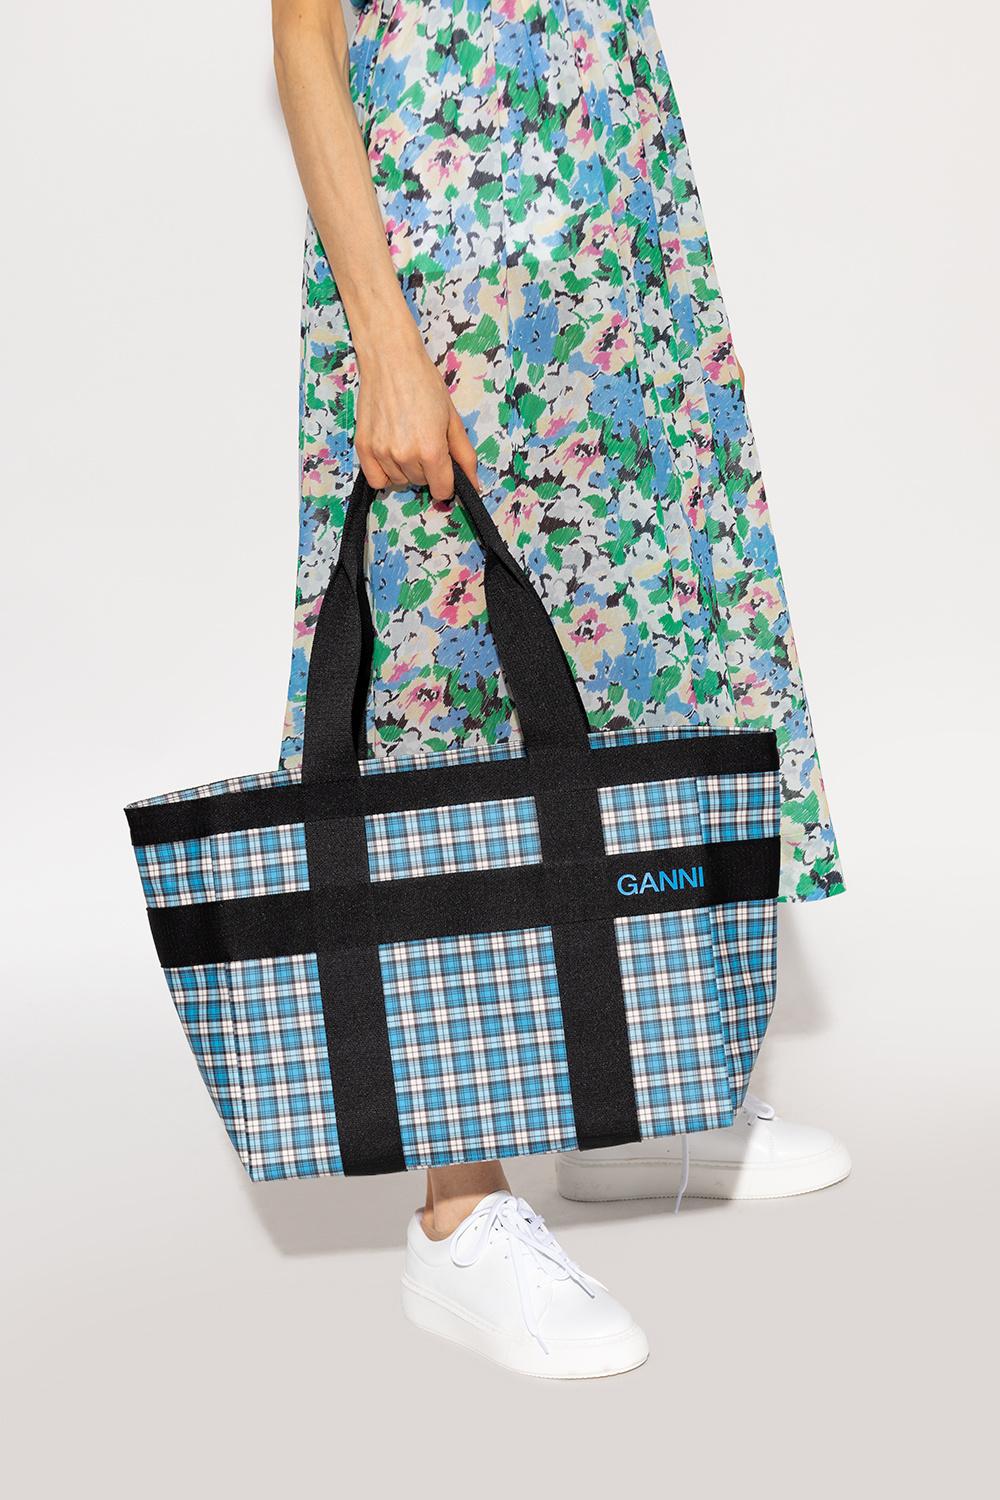 Ganni Shopper Bag in Blue | Lyst